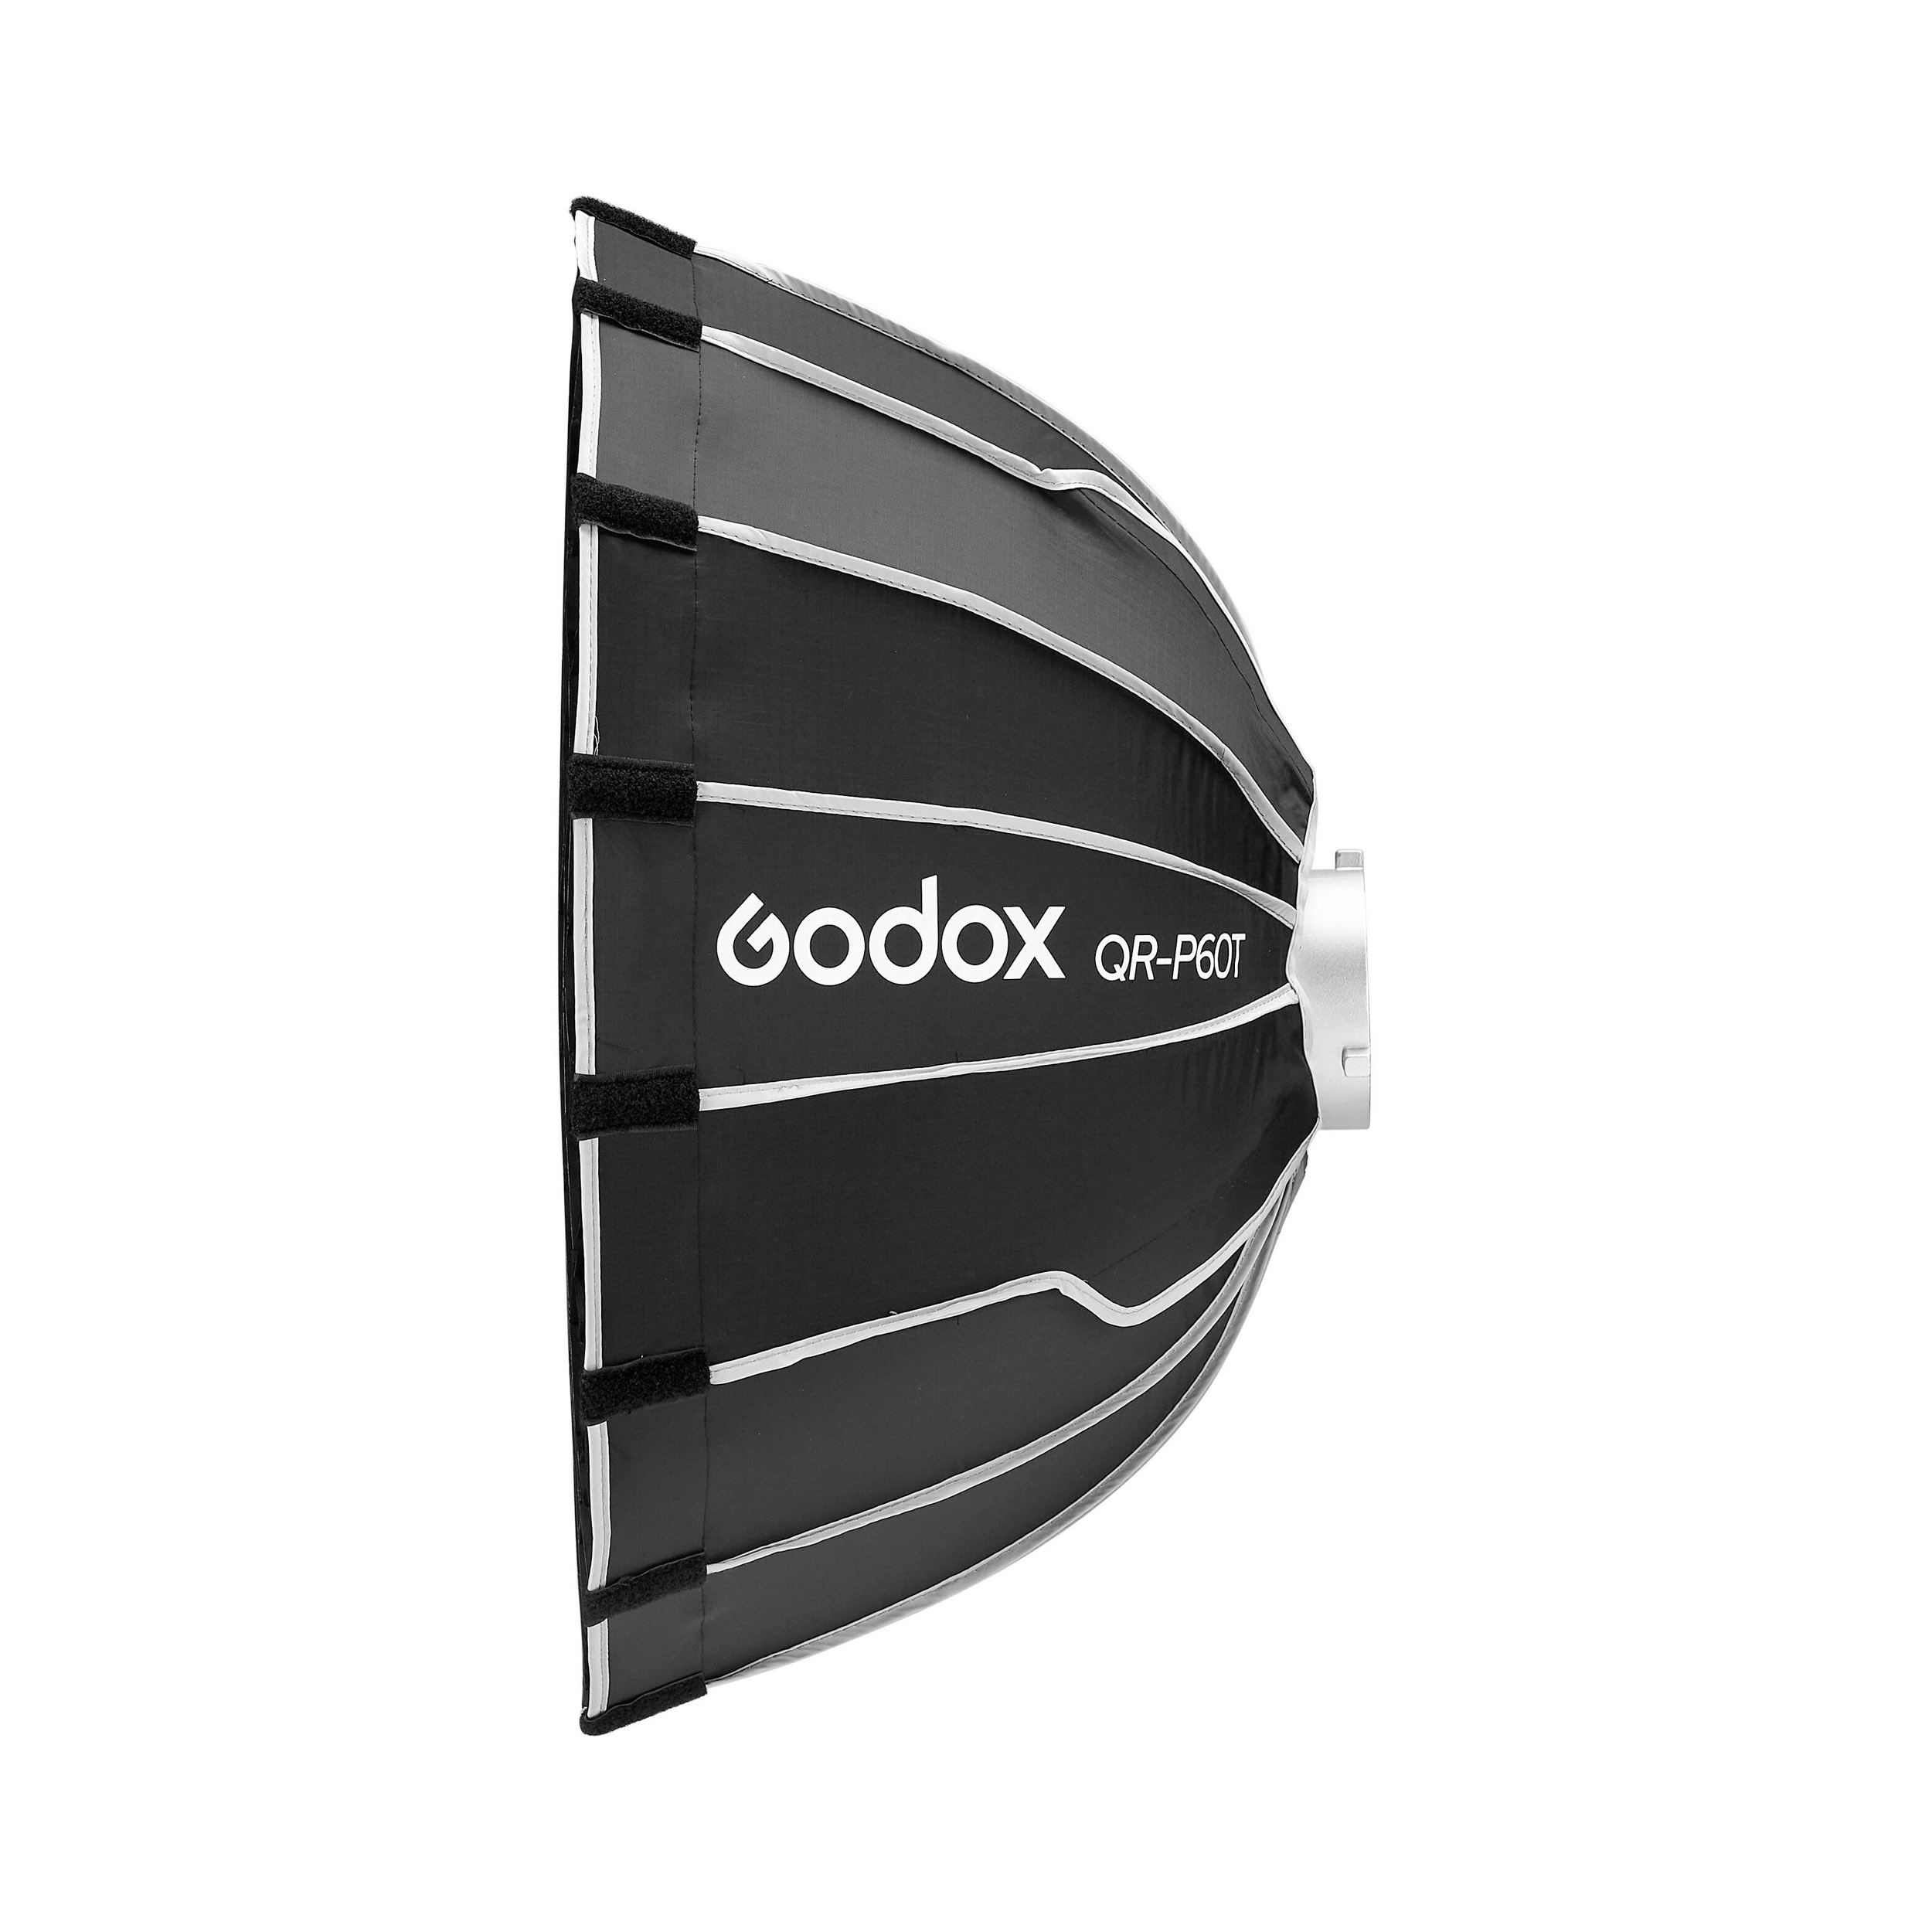    Godox QR-P60T    Ultra-mart